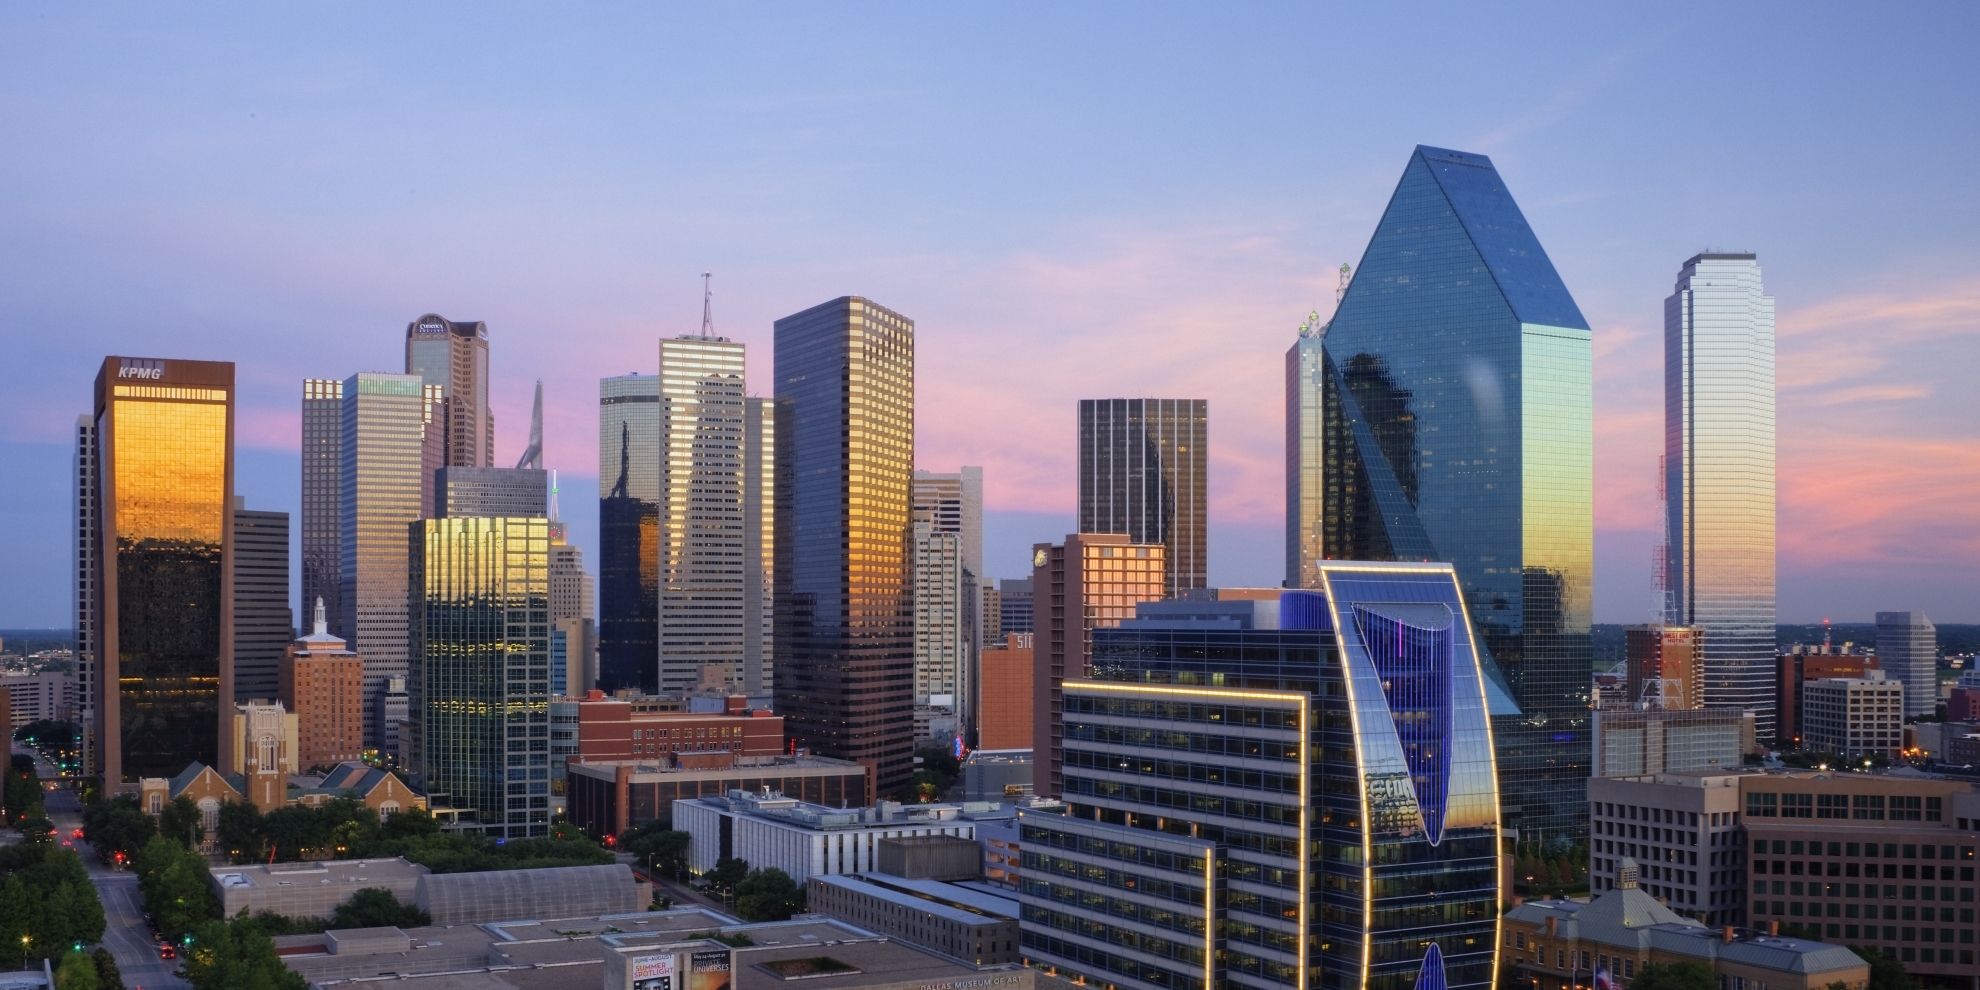 Dallas, Texas skyline at dusk